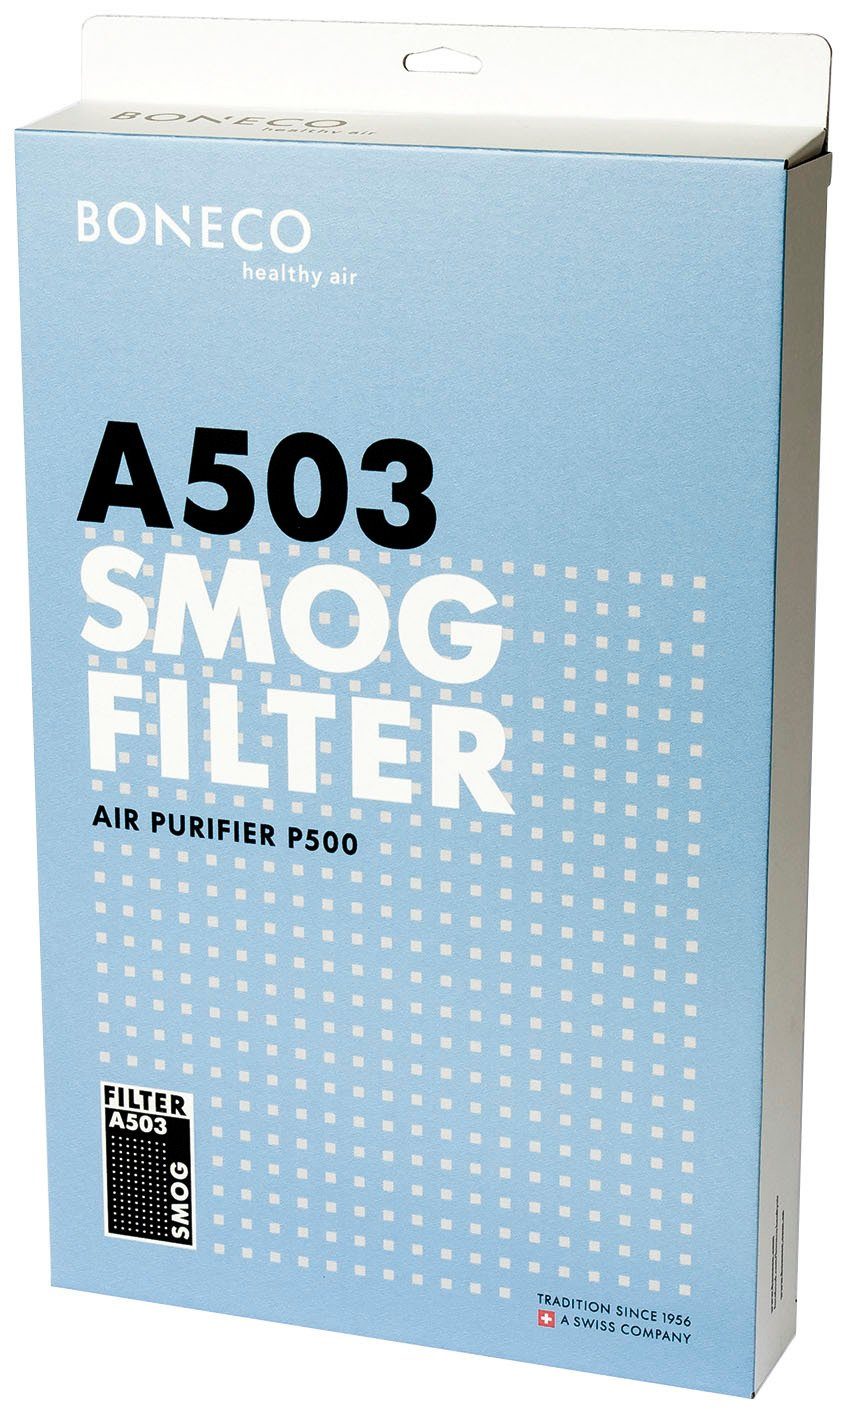 P500 Kombifilter Luftreiniger A503, Filter für Boneco Smog Zubehör